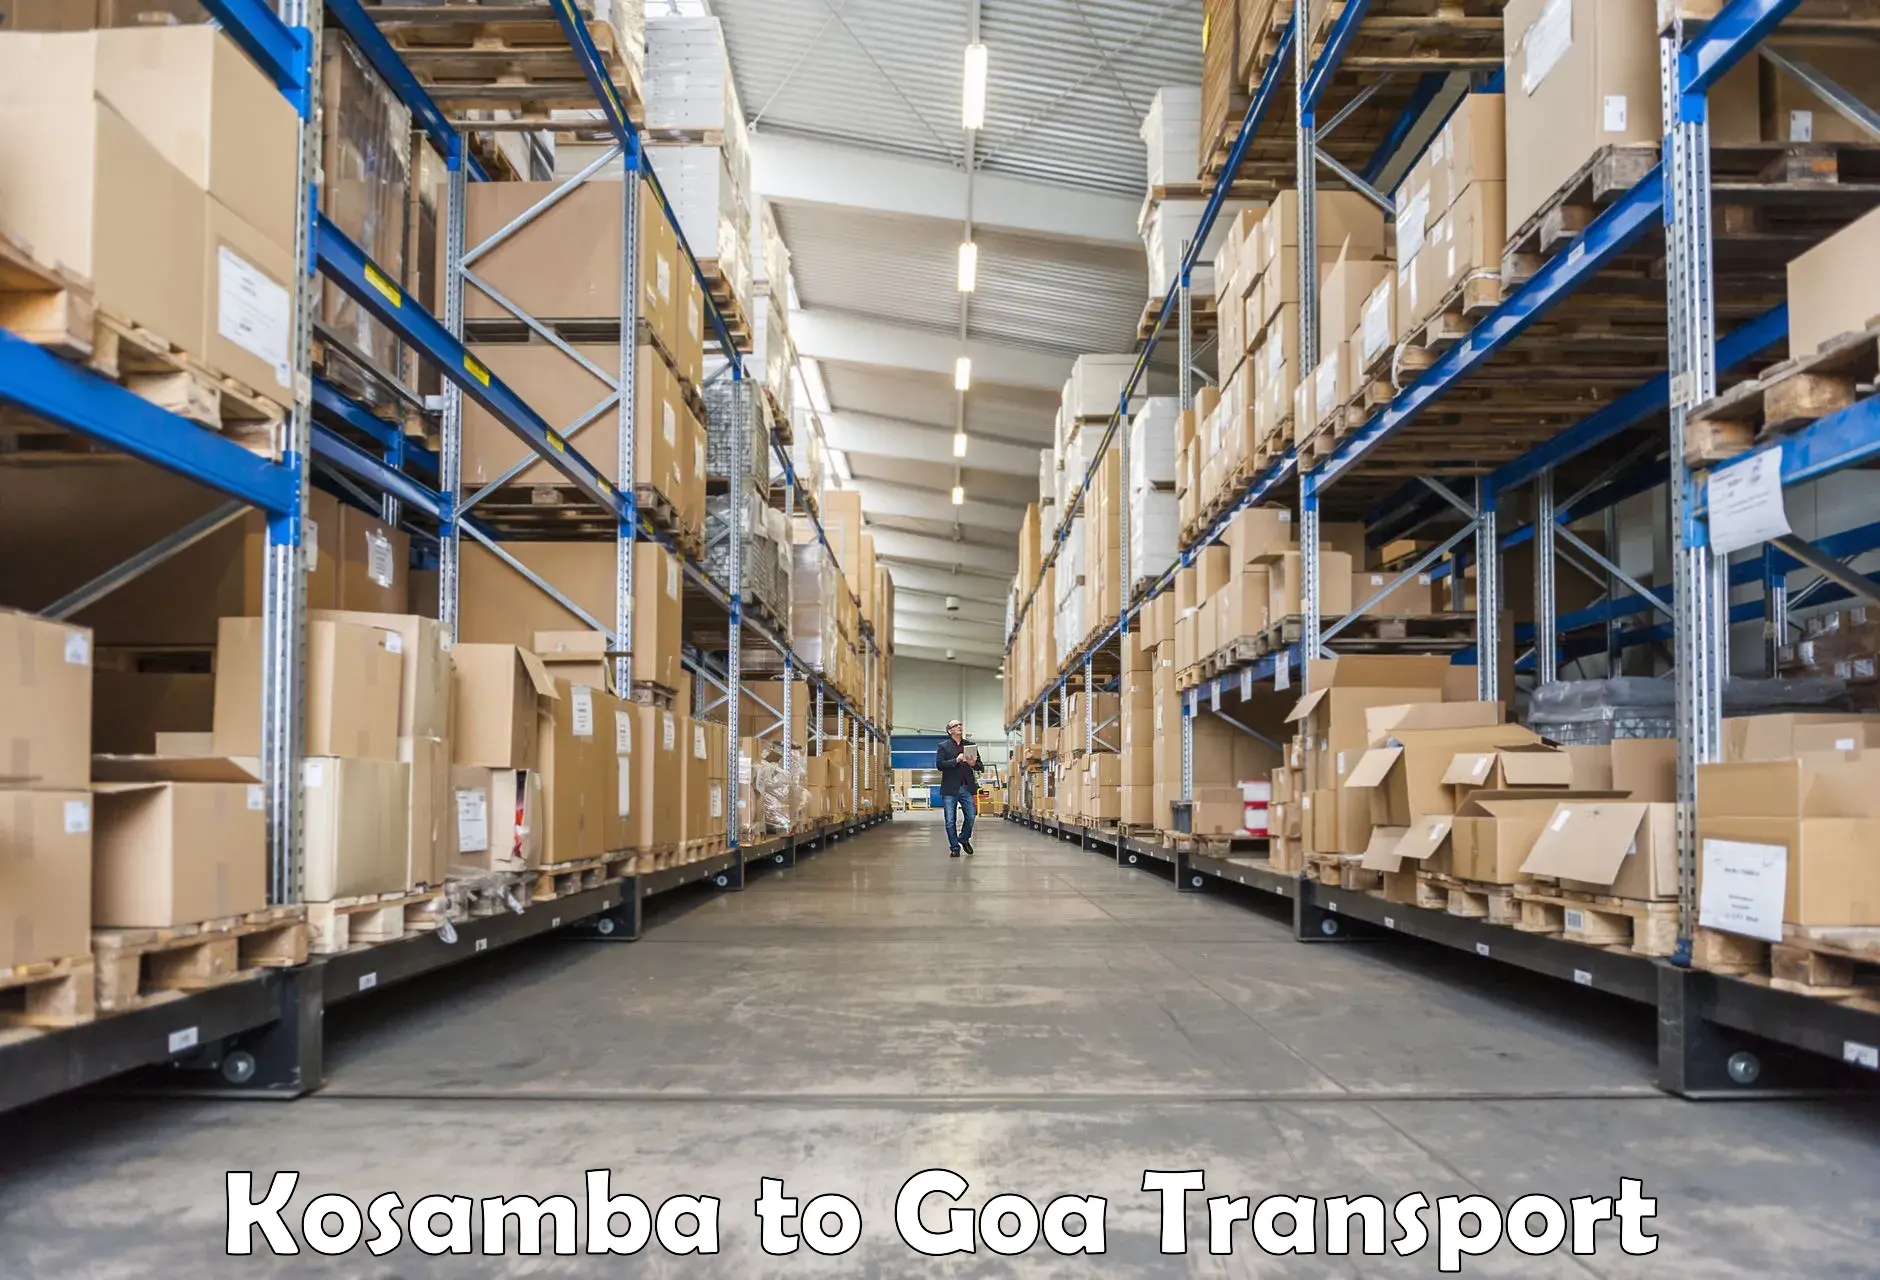 Air freight transport services Kosamba to Goa University